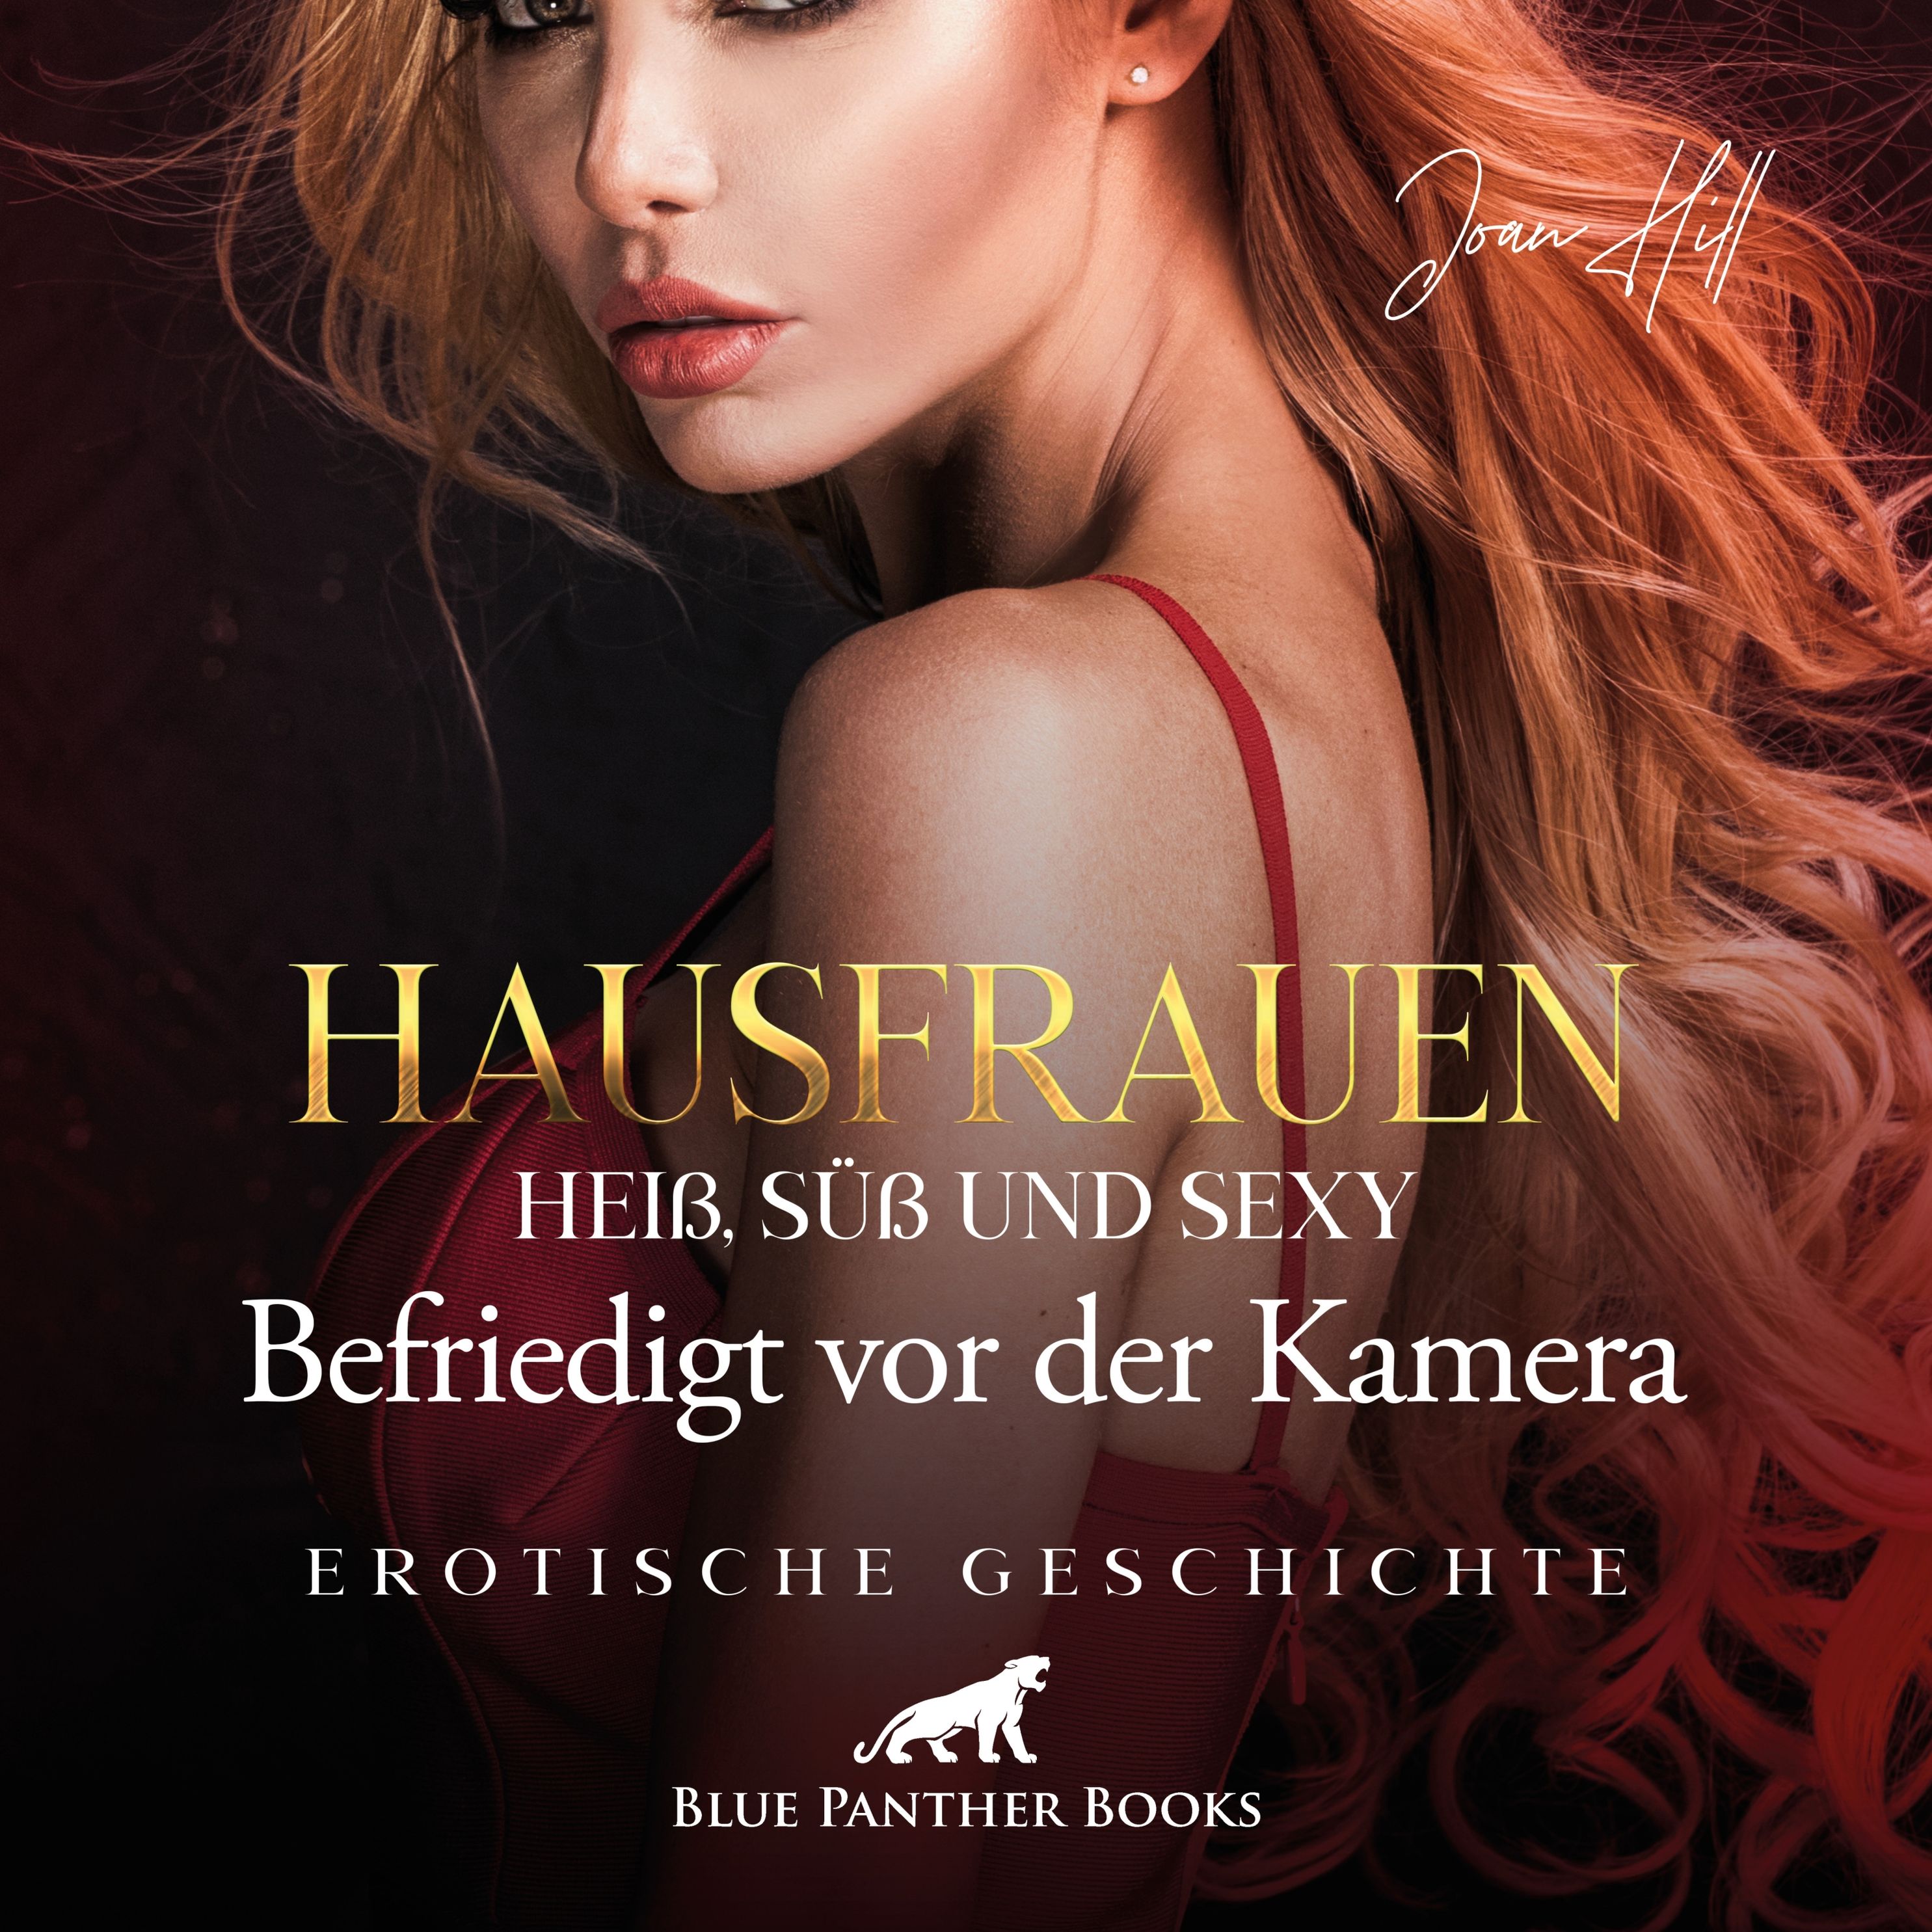 blue panther books Erotische Erotik Sex Hörbücher Hörbuch - Hausfrauen:  Heiß, süß & sexy – Befriedigt vor der Kamera Erotik Audio Story Erotisches Hörbuch  Hörbuch Download